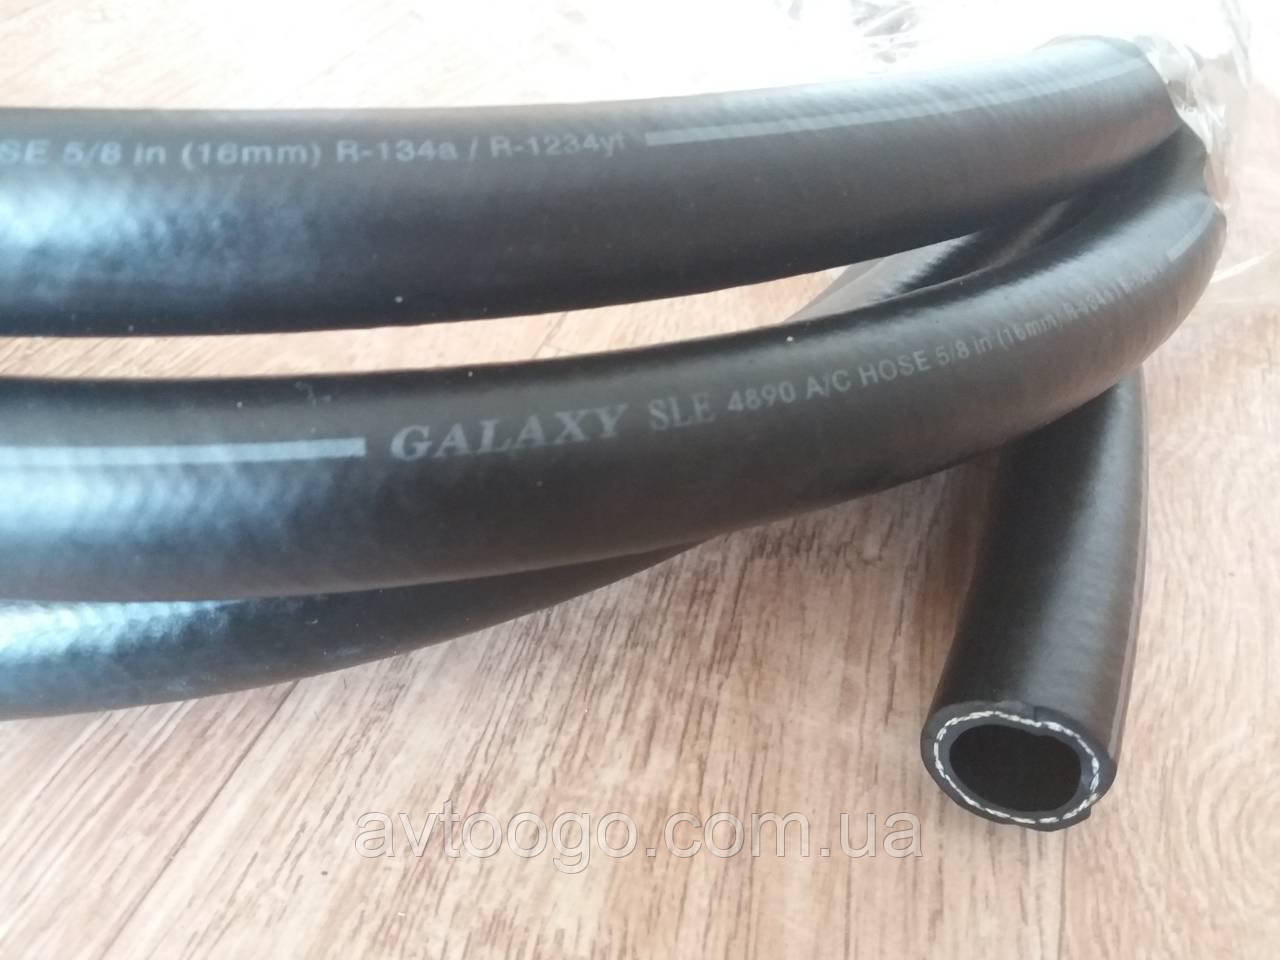 Шланг GALAXY SLE 4890 5/8 BARR (16mm) SIZE №12, R-134a, GOODYEAR